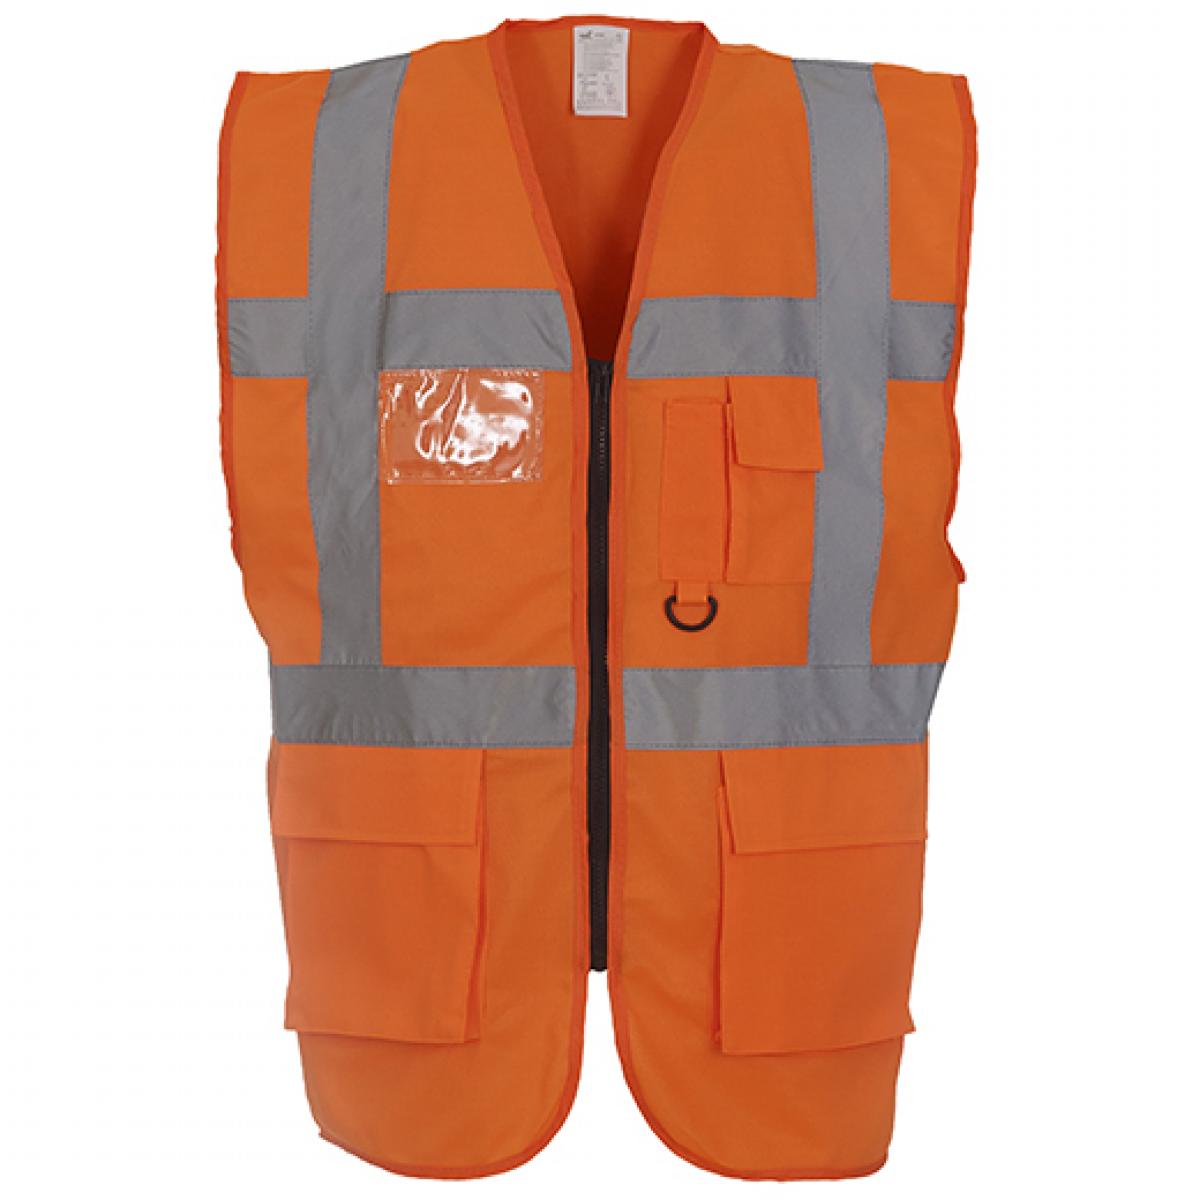 Hersteller: YOKO Herstellernummer: HVW801 Artikelbezeichnung: Herren Multi-Functional Executive Waistcoat Farbe: Hi-Vis Orange